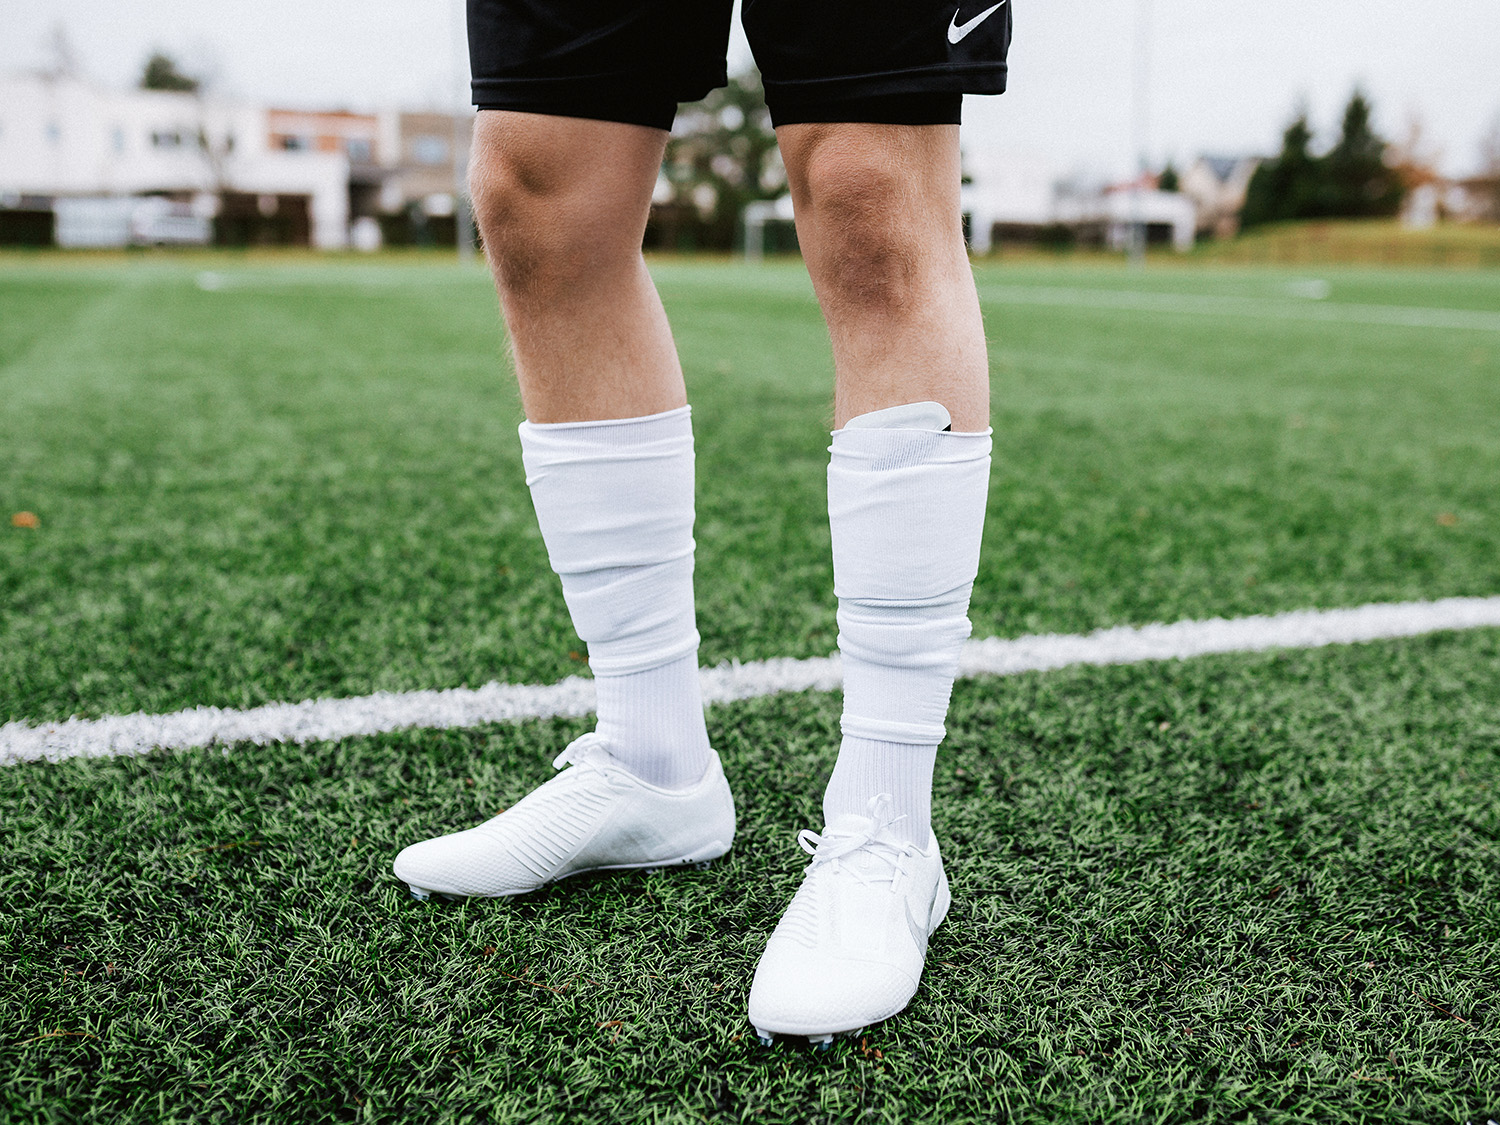 Nike socks for football